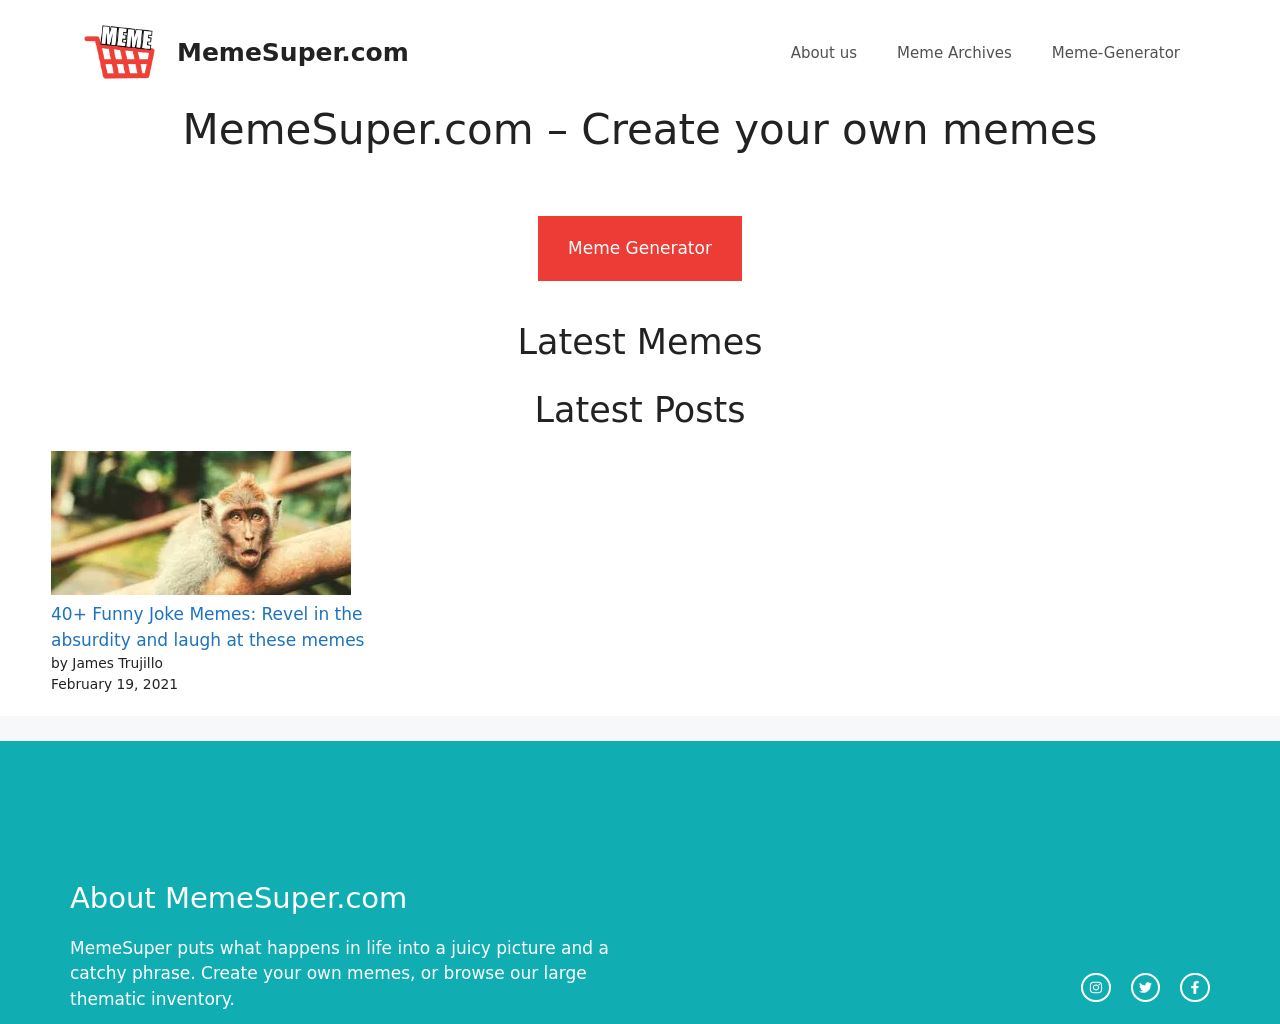 memesuper.com